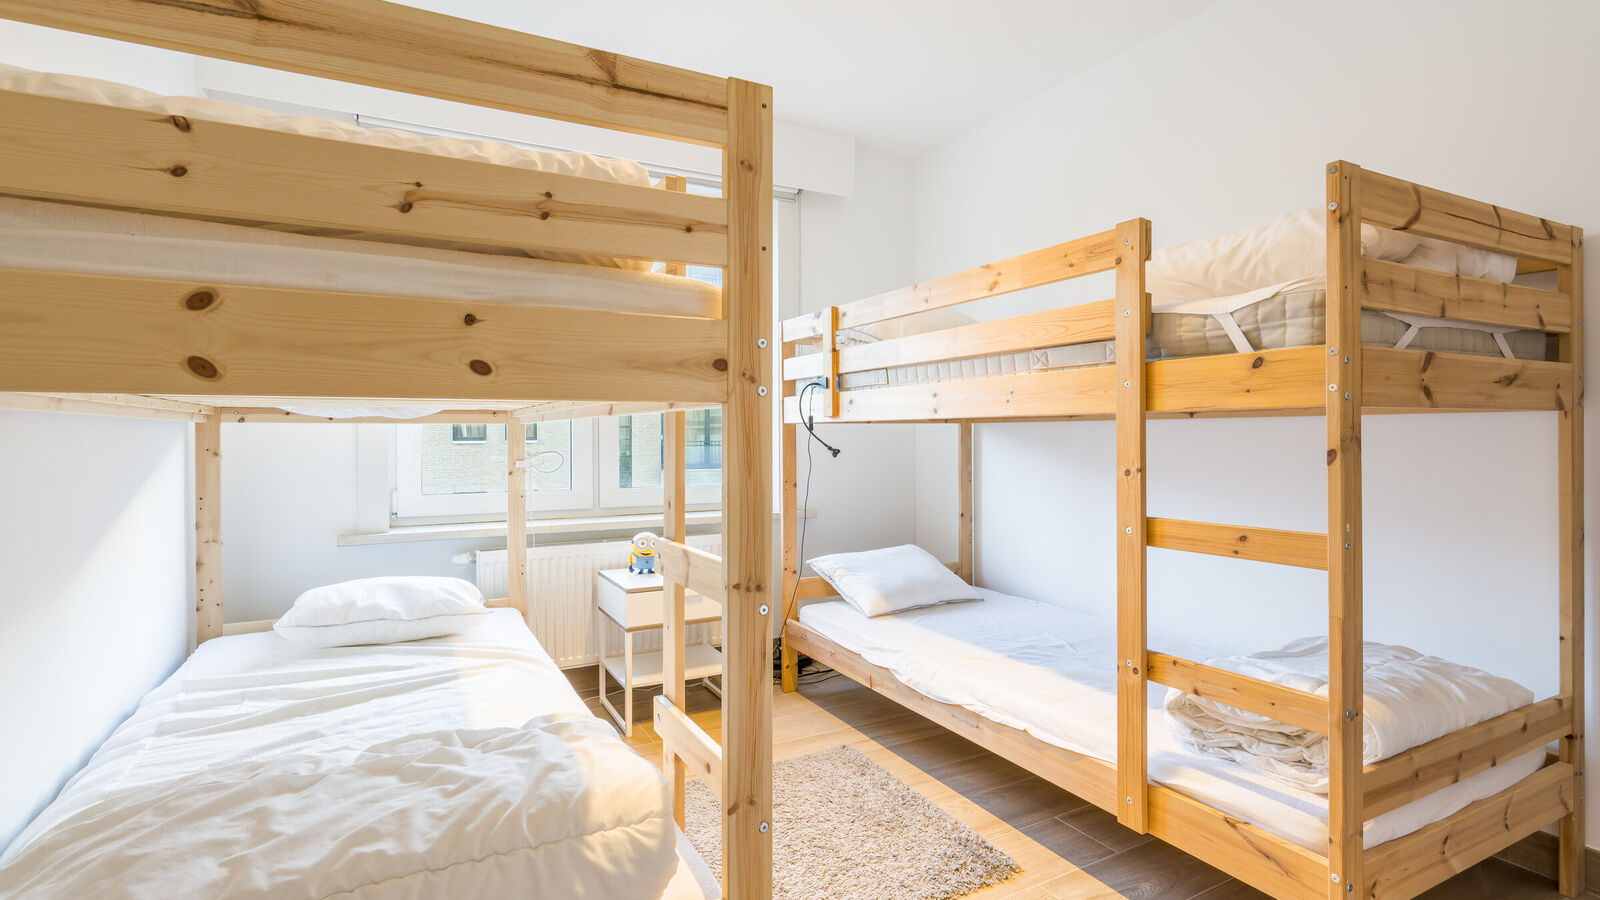 App. 2 bedrooms in Koksijde